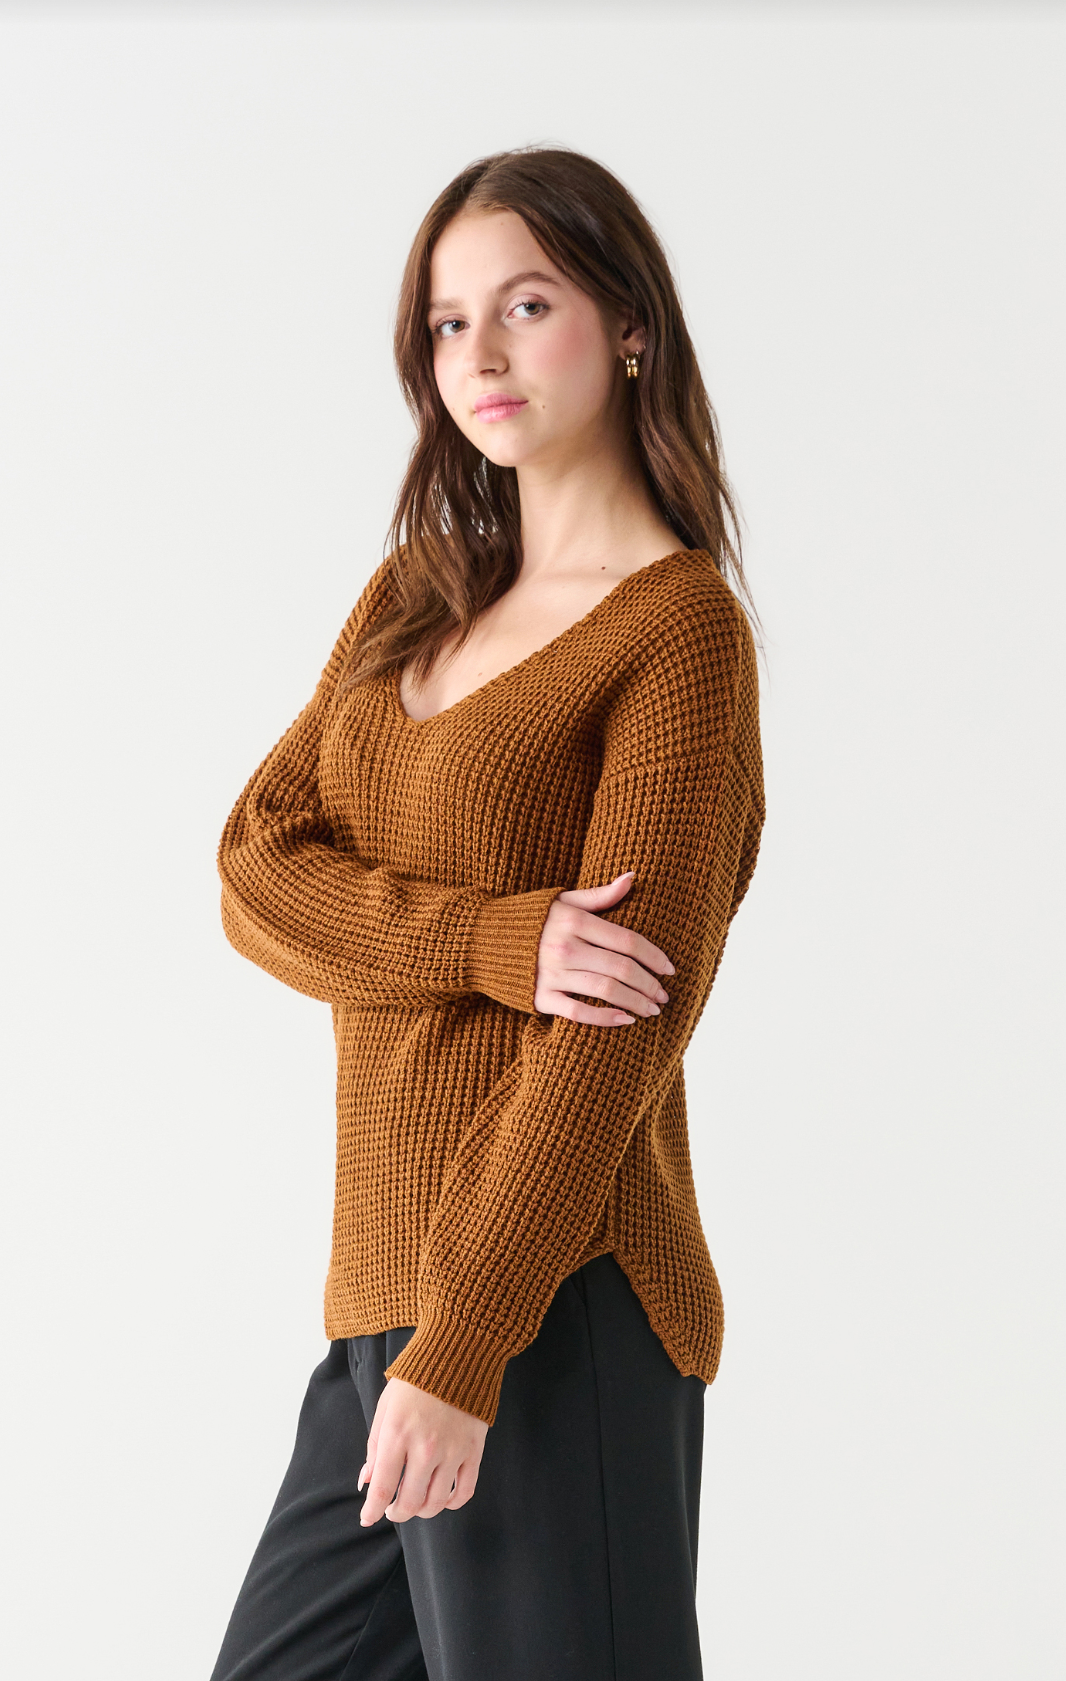 Textured Stitch Bevelled Hem Sweater